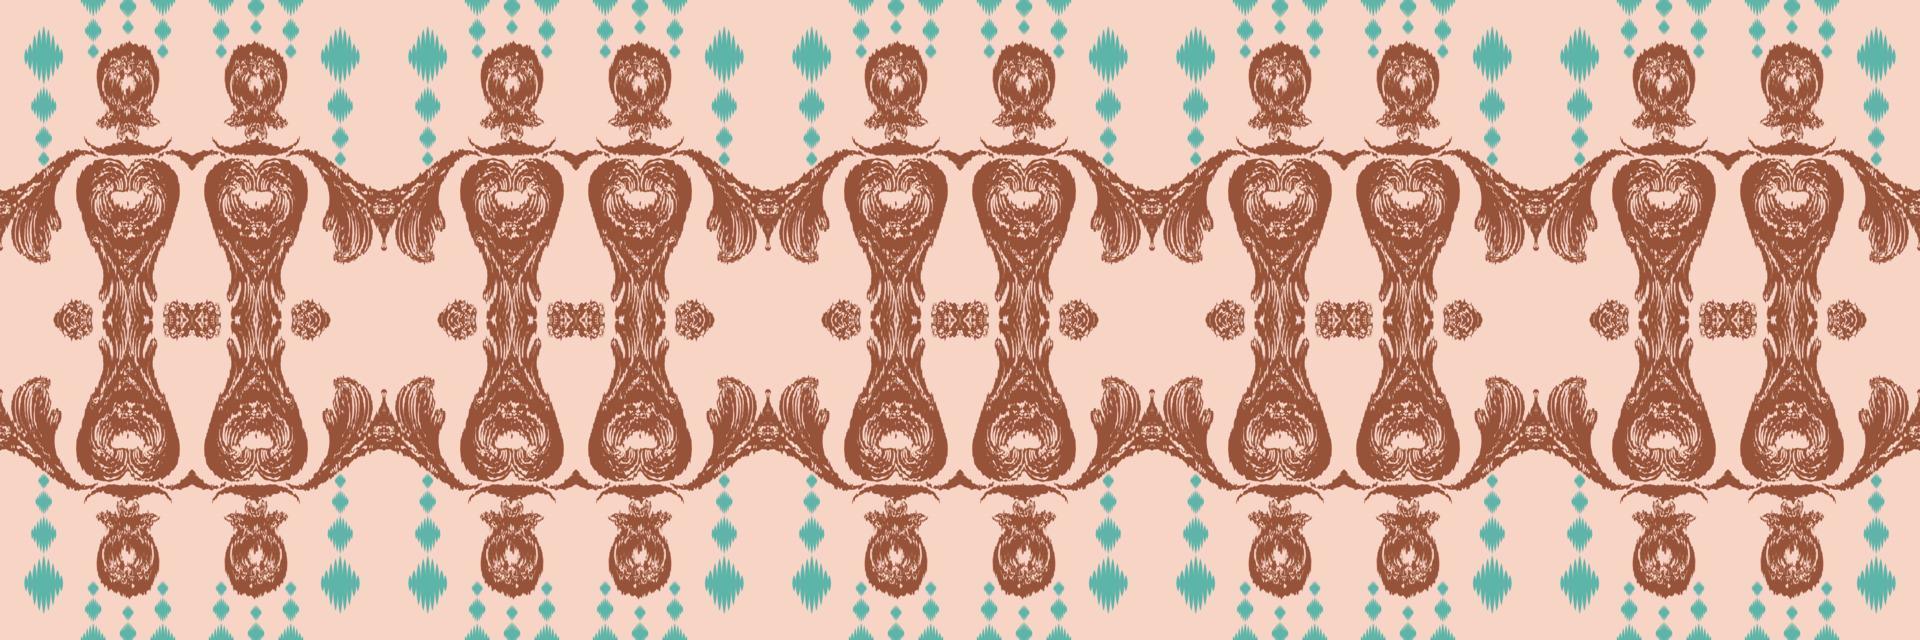 ikat mönster stam- bakgrund sömlös mönster. etnisk geometrisk ikkat batik digital vektor textil- design för grafik tyg saree mughal borsta symbol strängar textur kurti kurtis kurtas